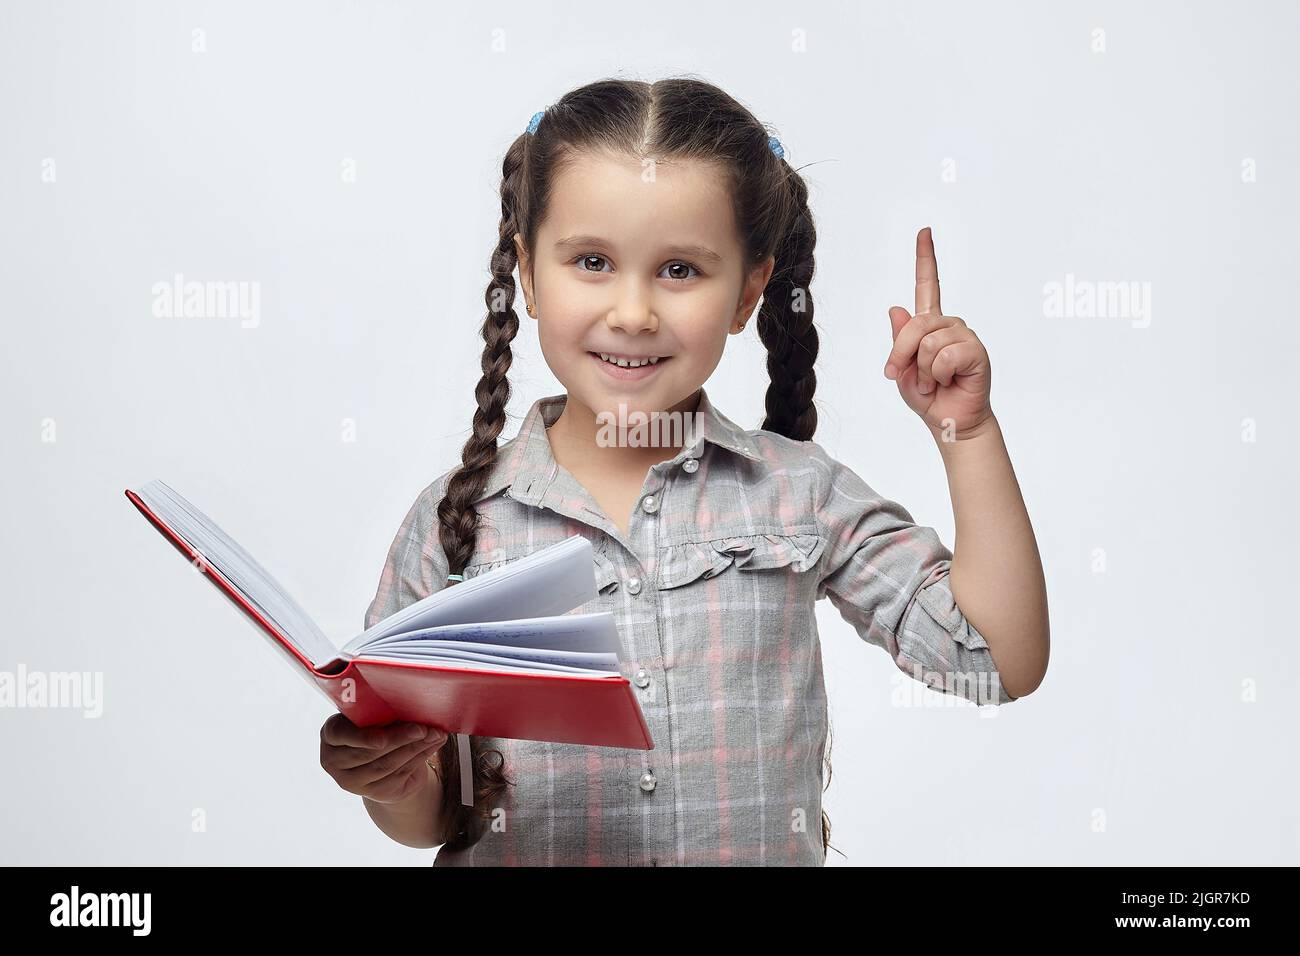 une petite fille à cheveux noirs tient un livre rouge dans ses mains et pointe vers l'espace libre avec son index. Banque D'Images